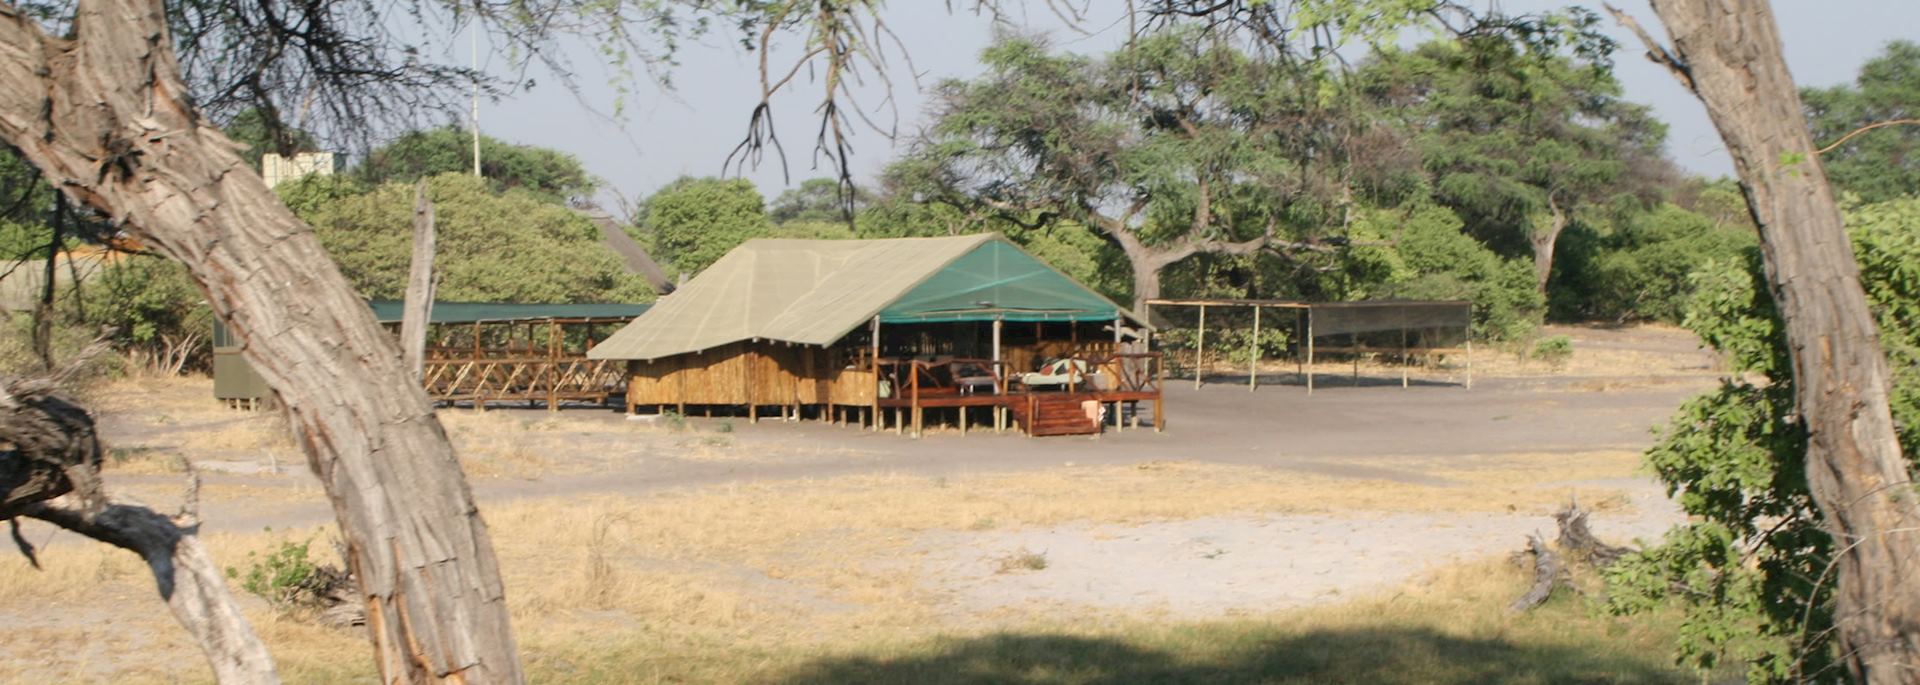 Camp Savuti